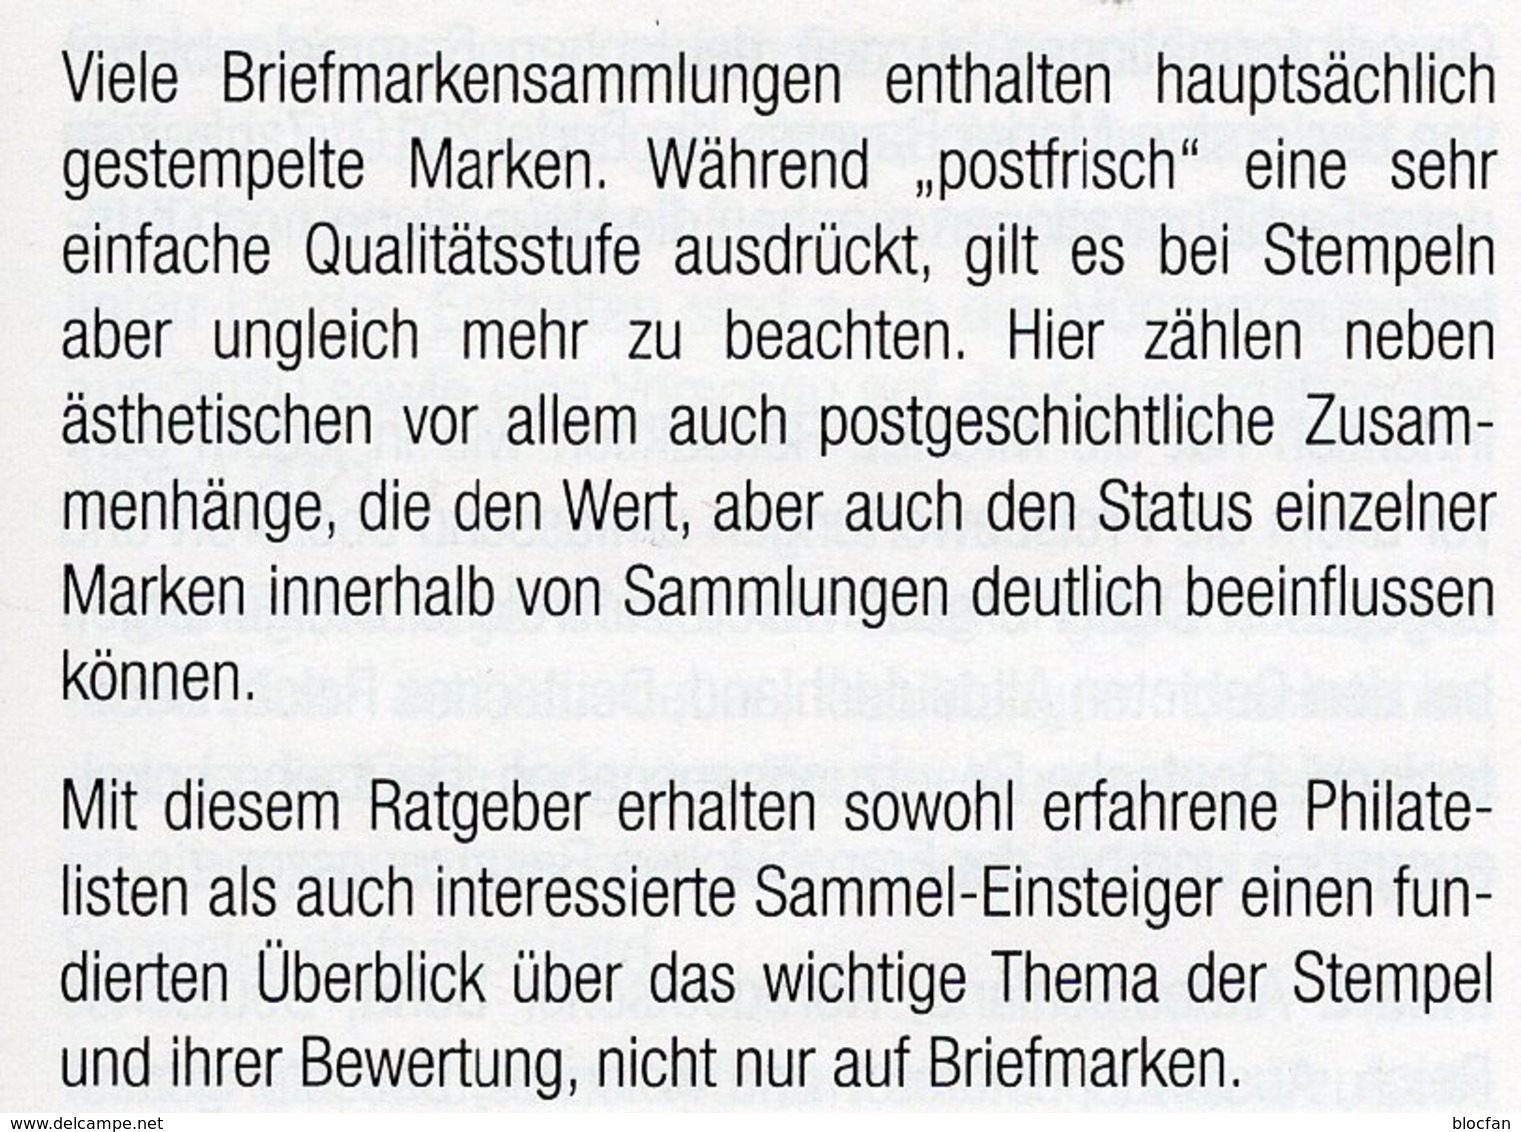 Stempel Verstehen Ratgeber 2020 New 50€ MICHEL Briefmarken Stempelarten Wert Bestimmen Stamps ISBN978 3 95402 252 6 - Philatélie